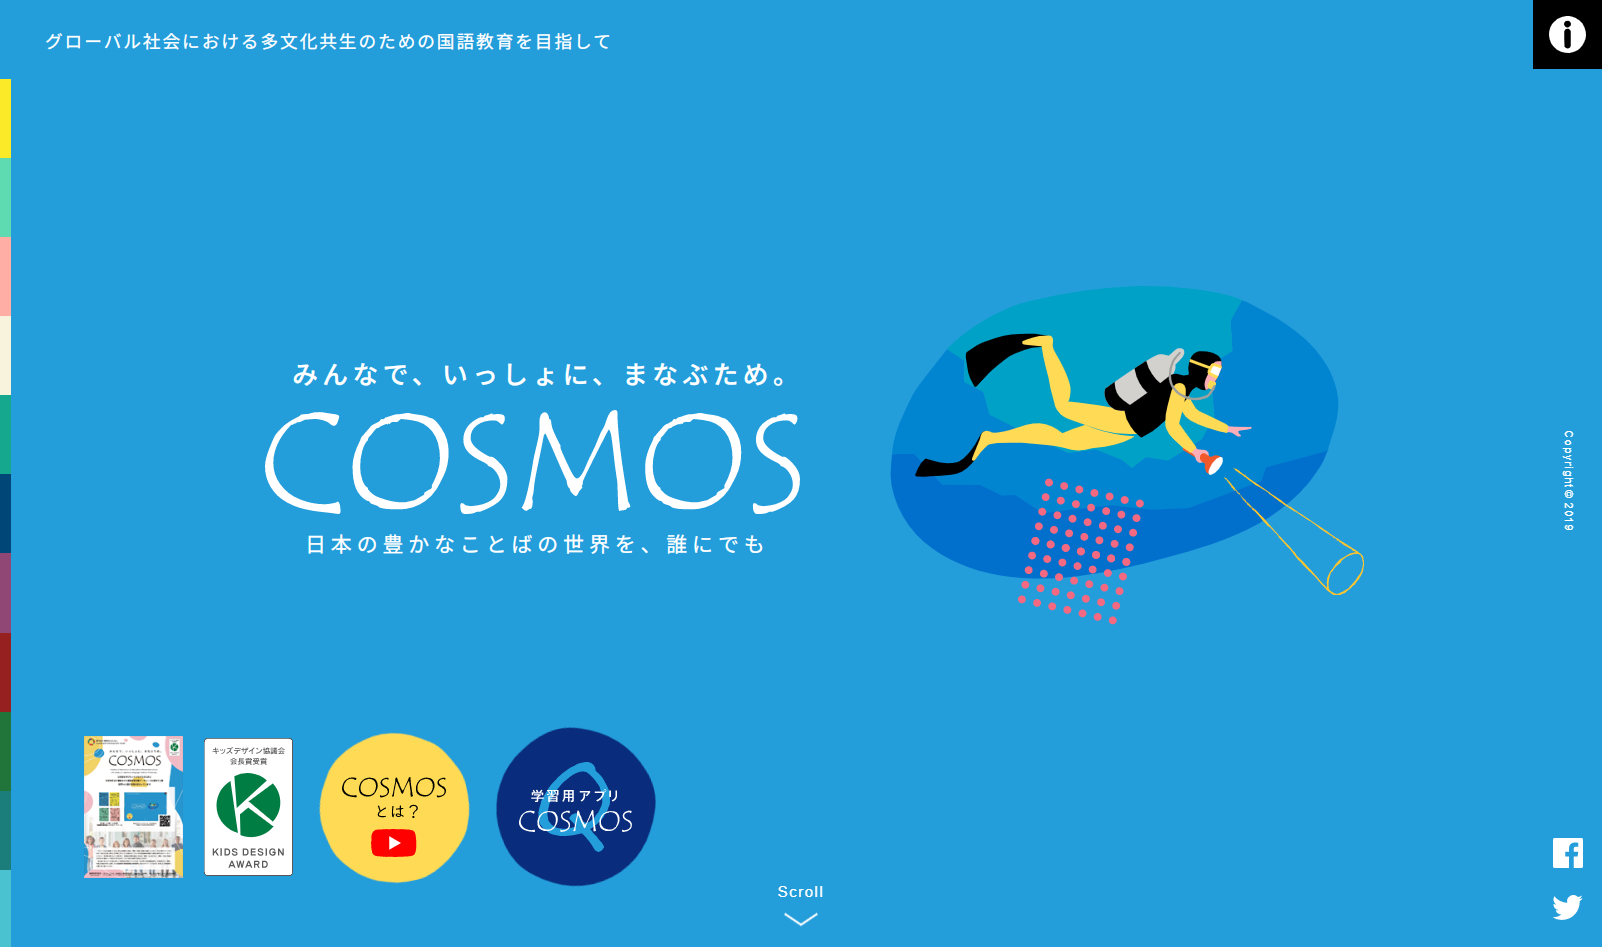 国語科教育を支援するオンラインプラットフォーム『COSMOS』が「日本語難民児童」を救う